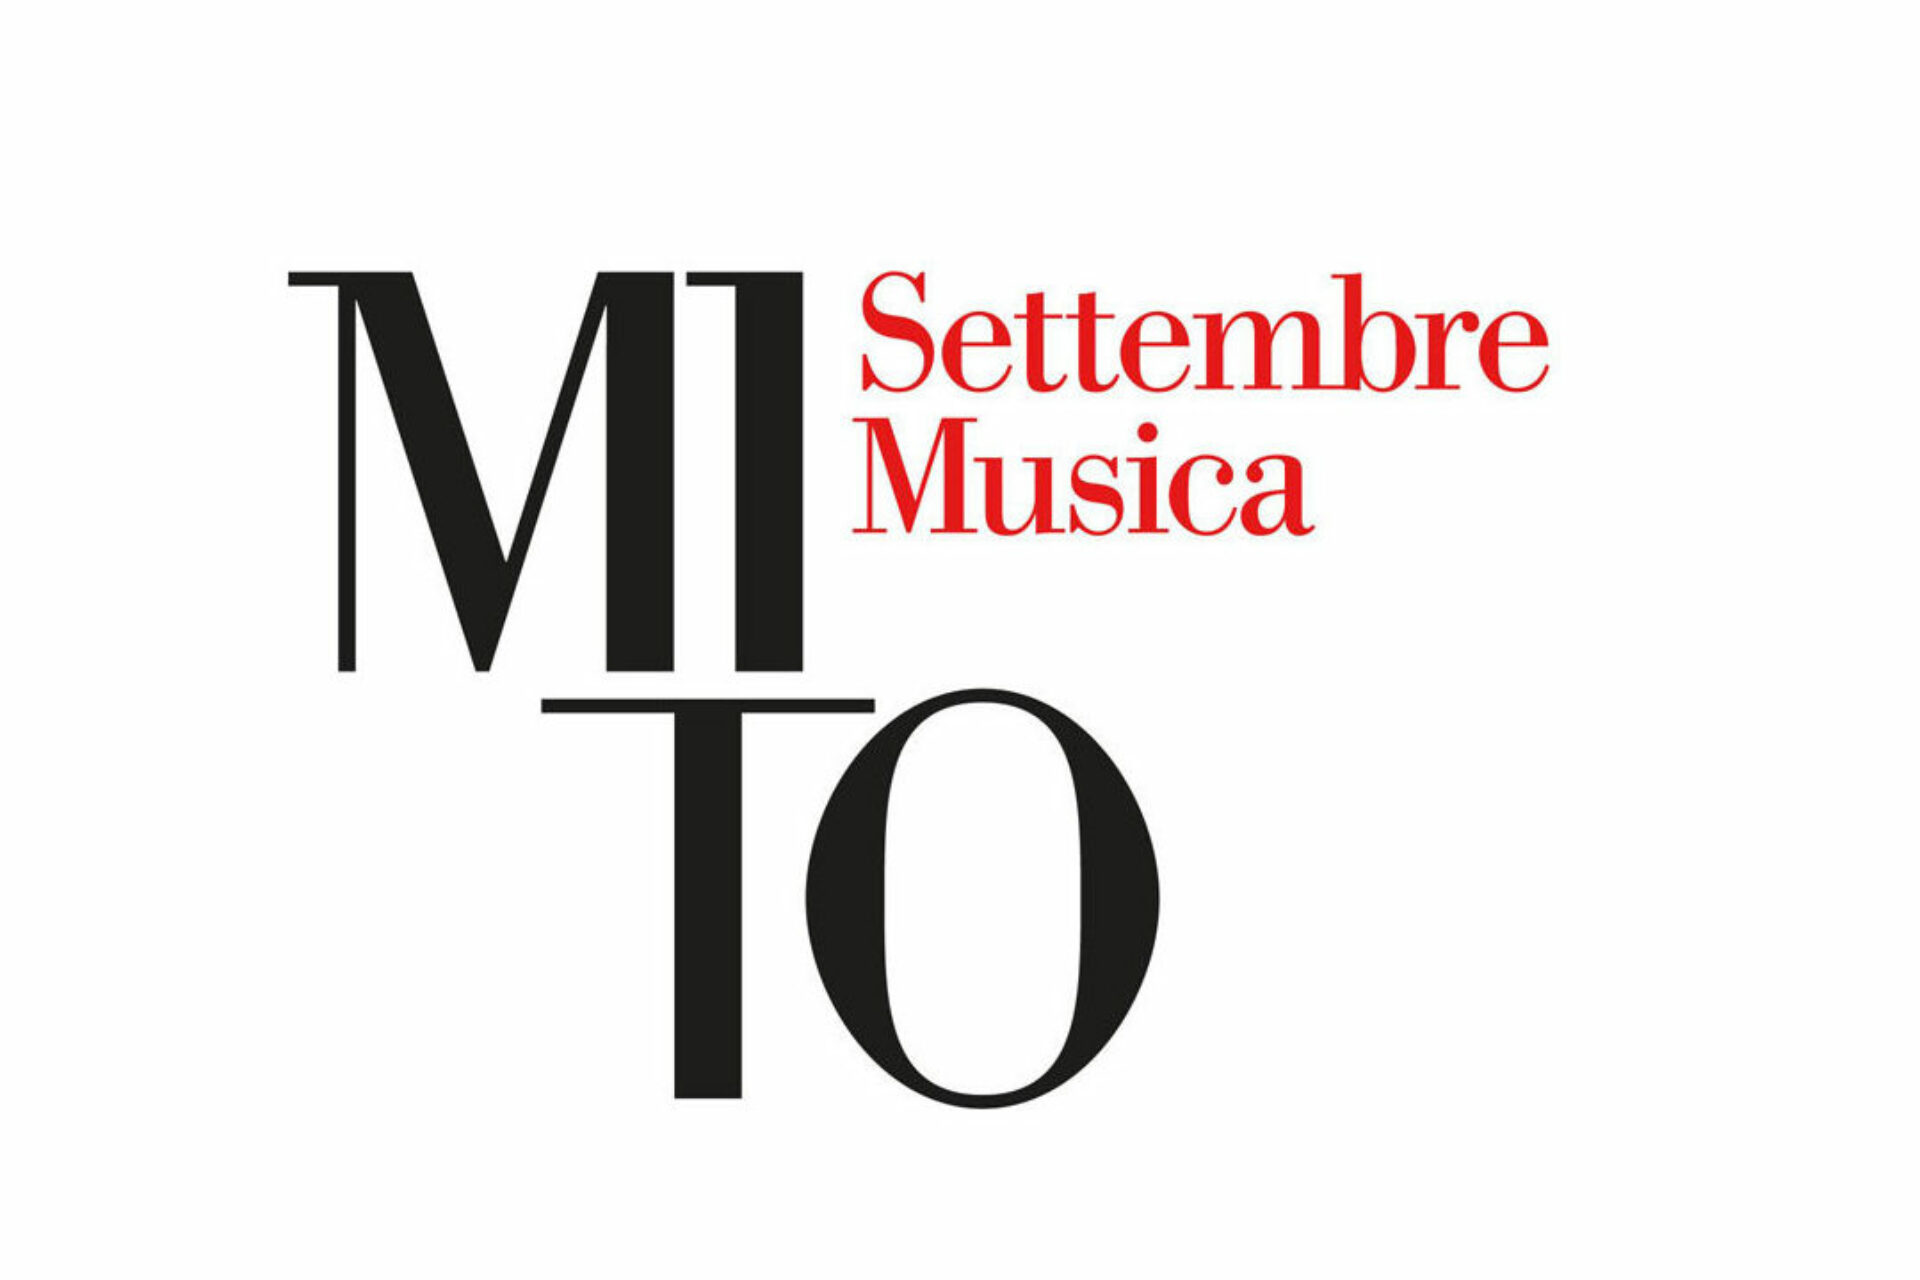 MITO SettembreMusica